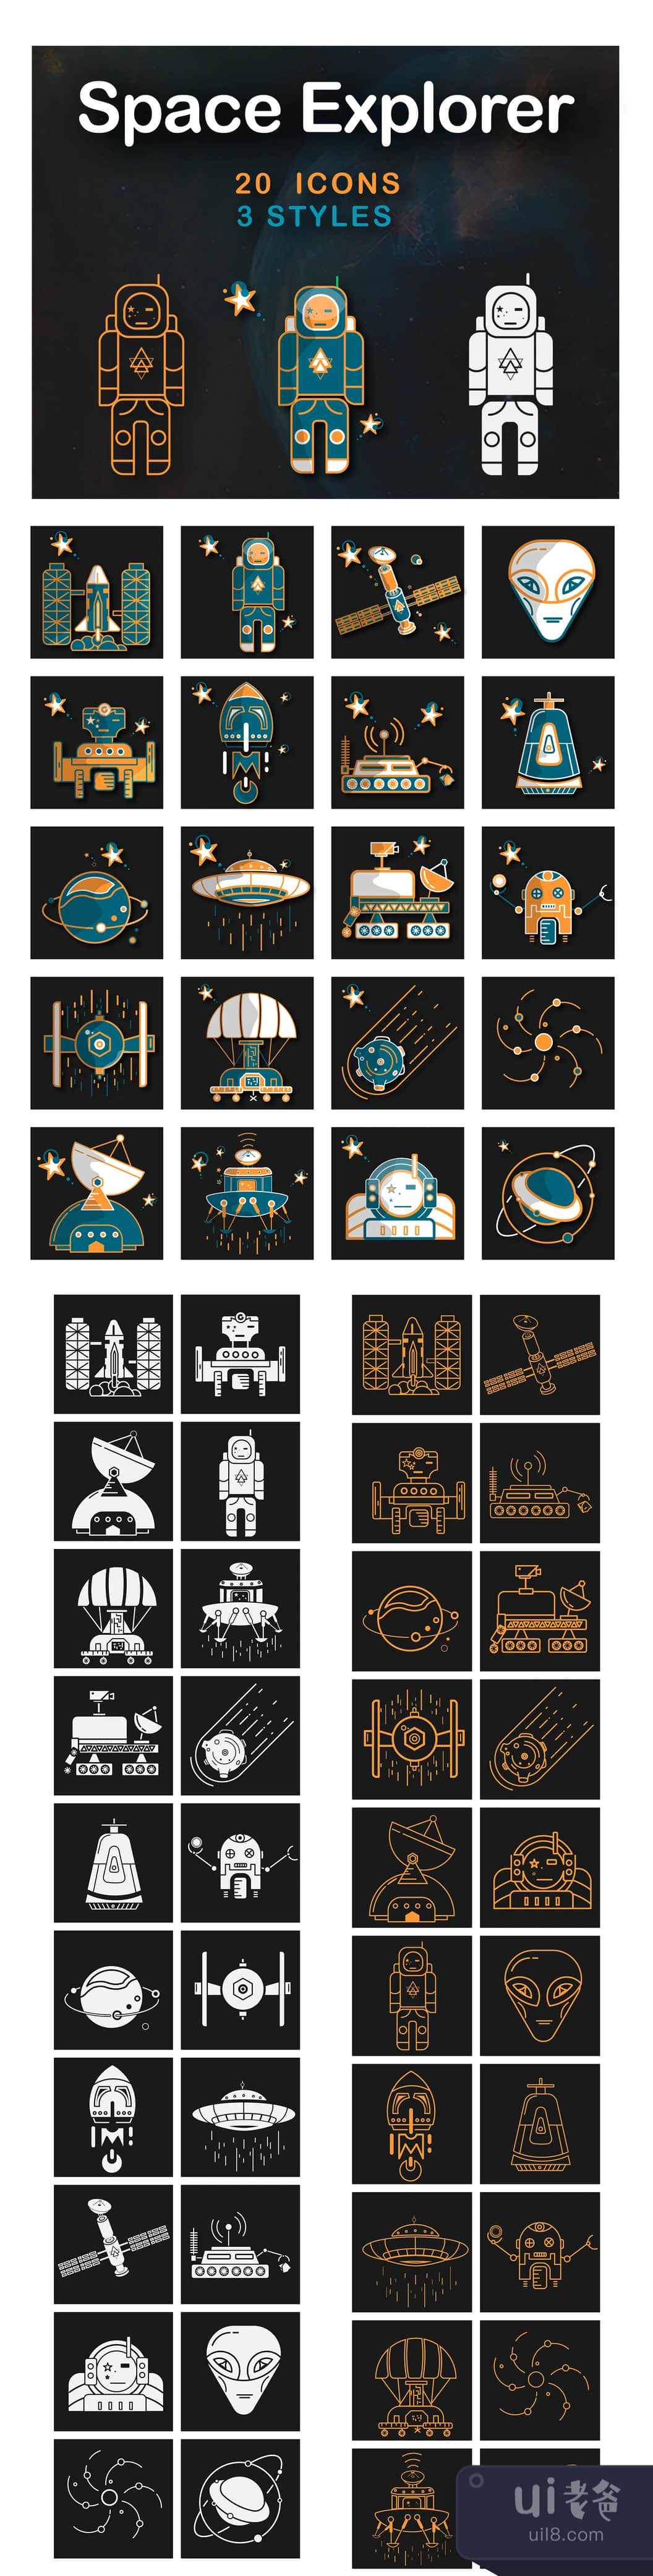 空间探索者图标 (Space Explorer Icons)插图1